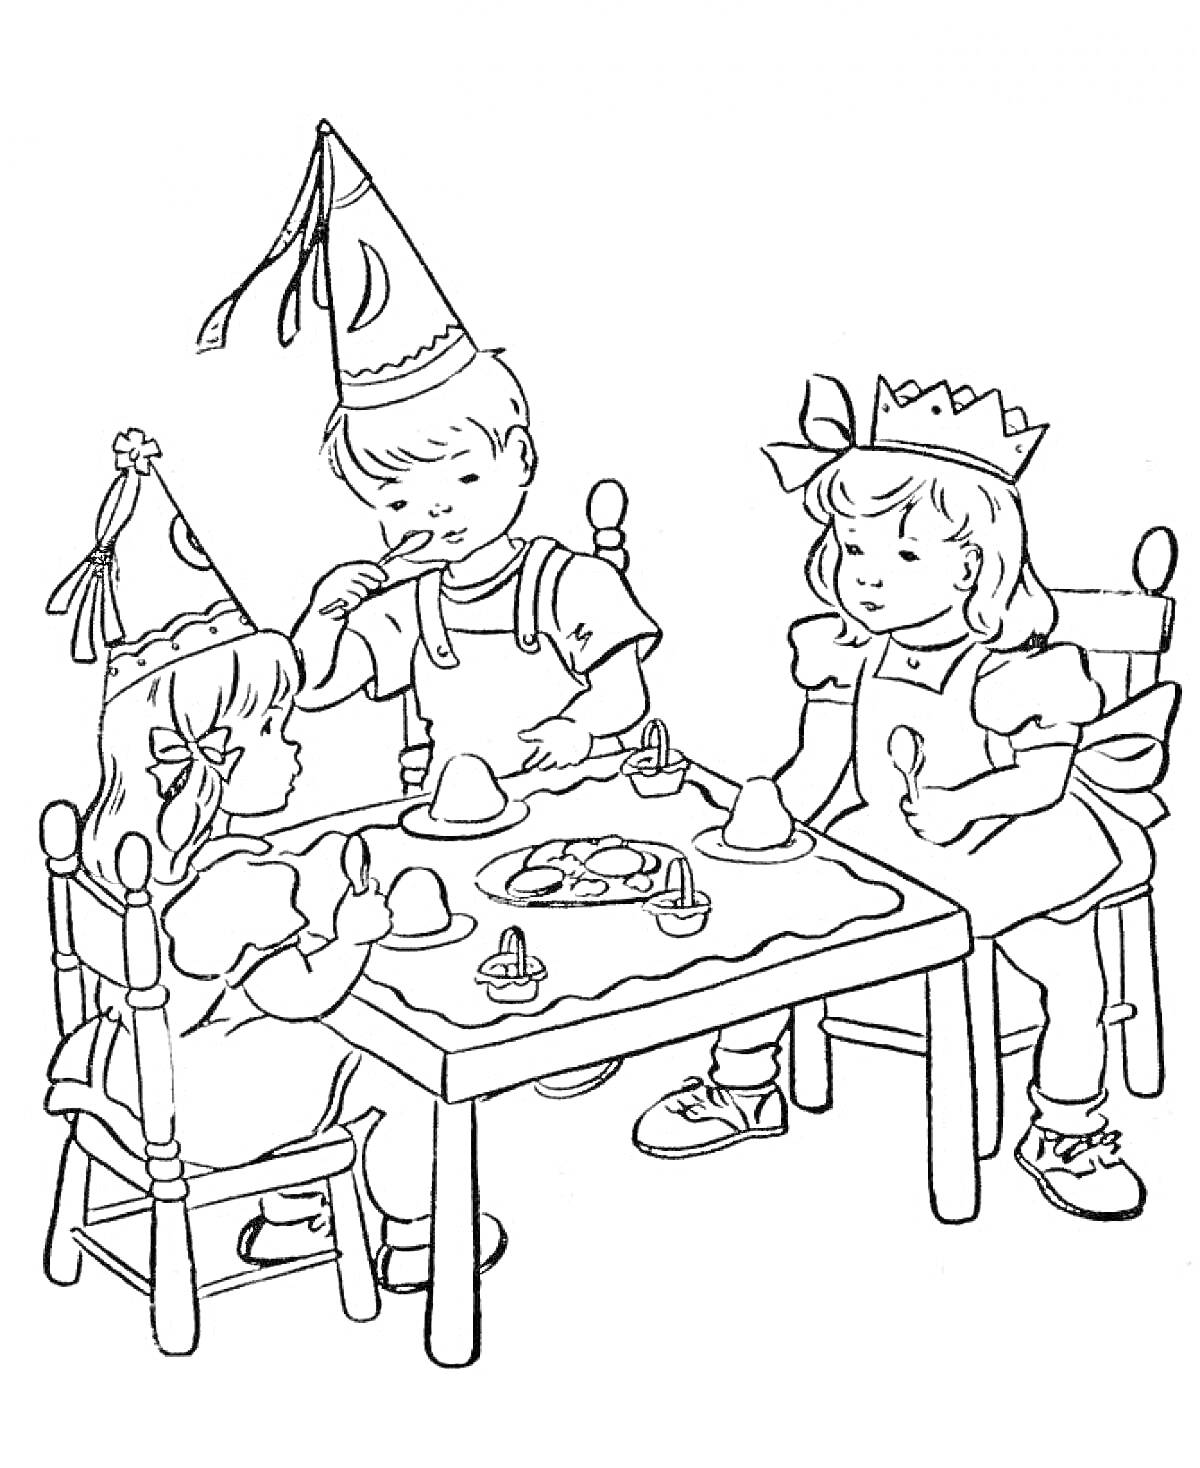 Раскраска Дети на празднике за столом с угощениями, тортом, кексами и свечами